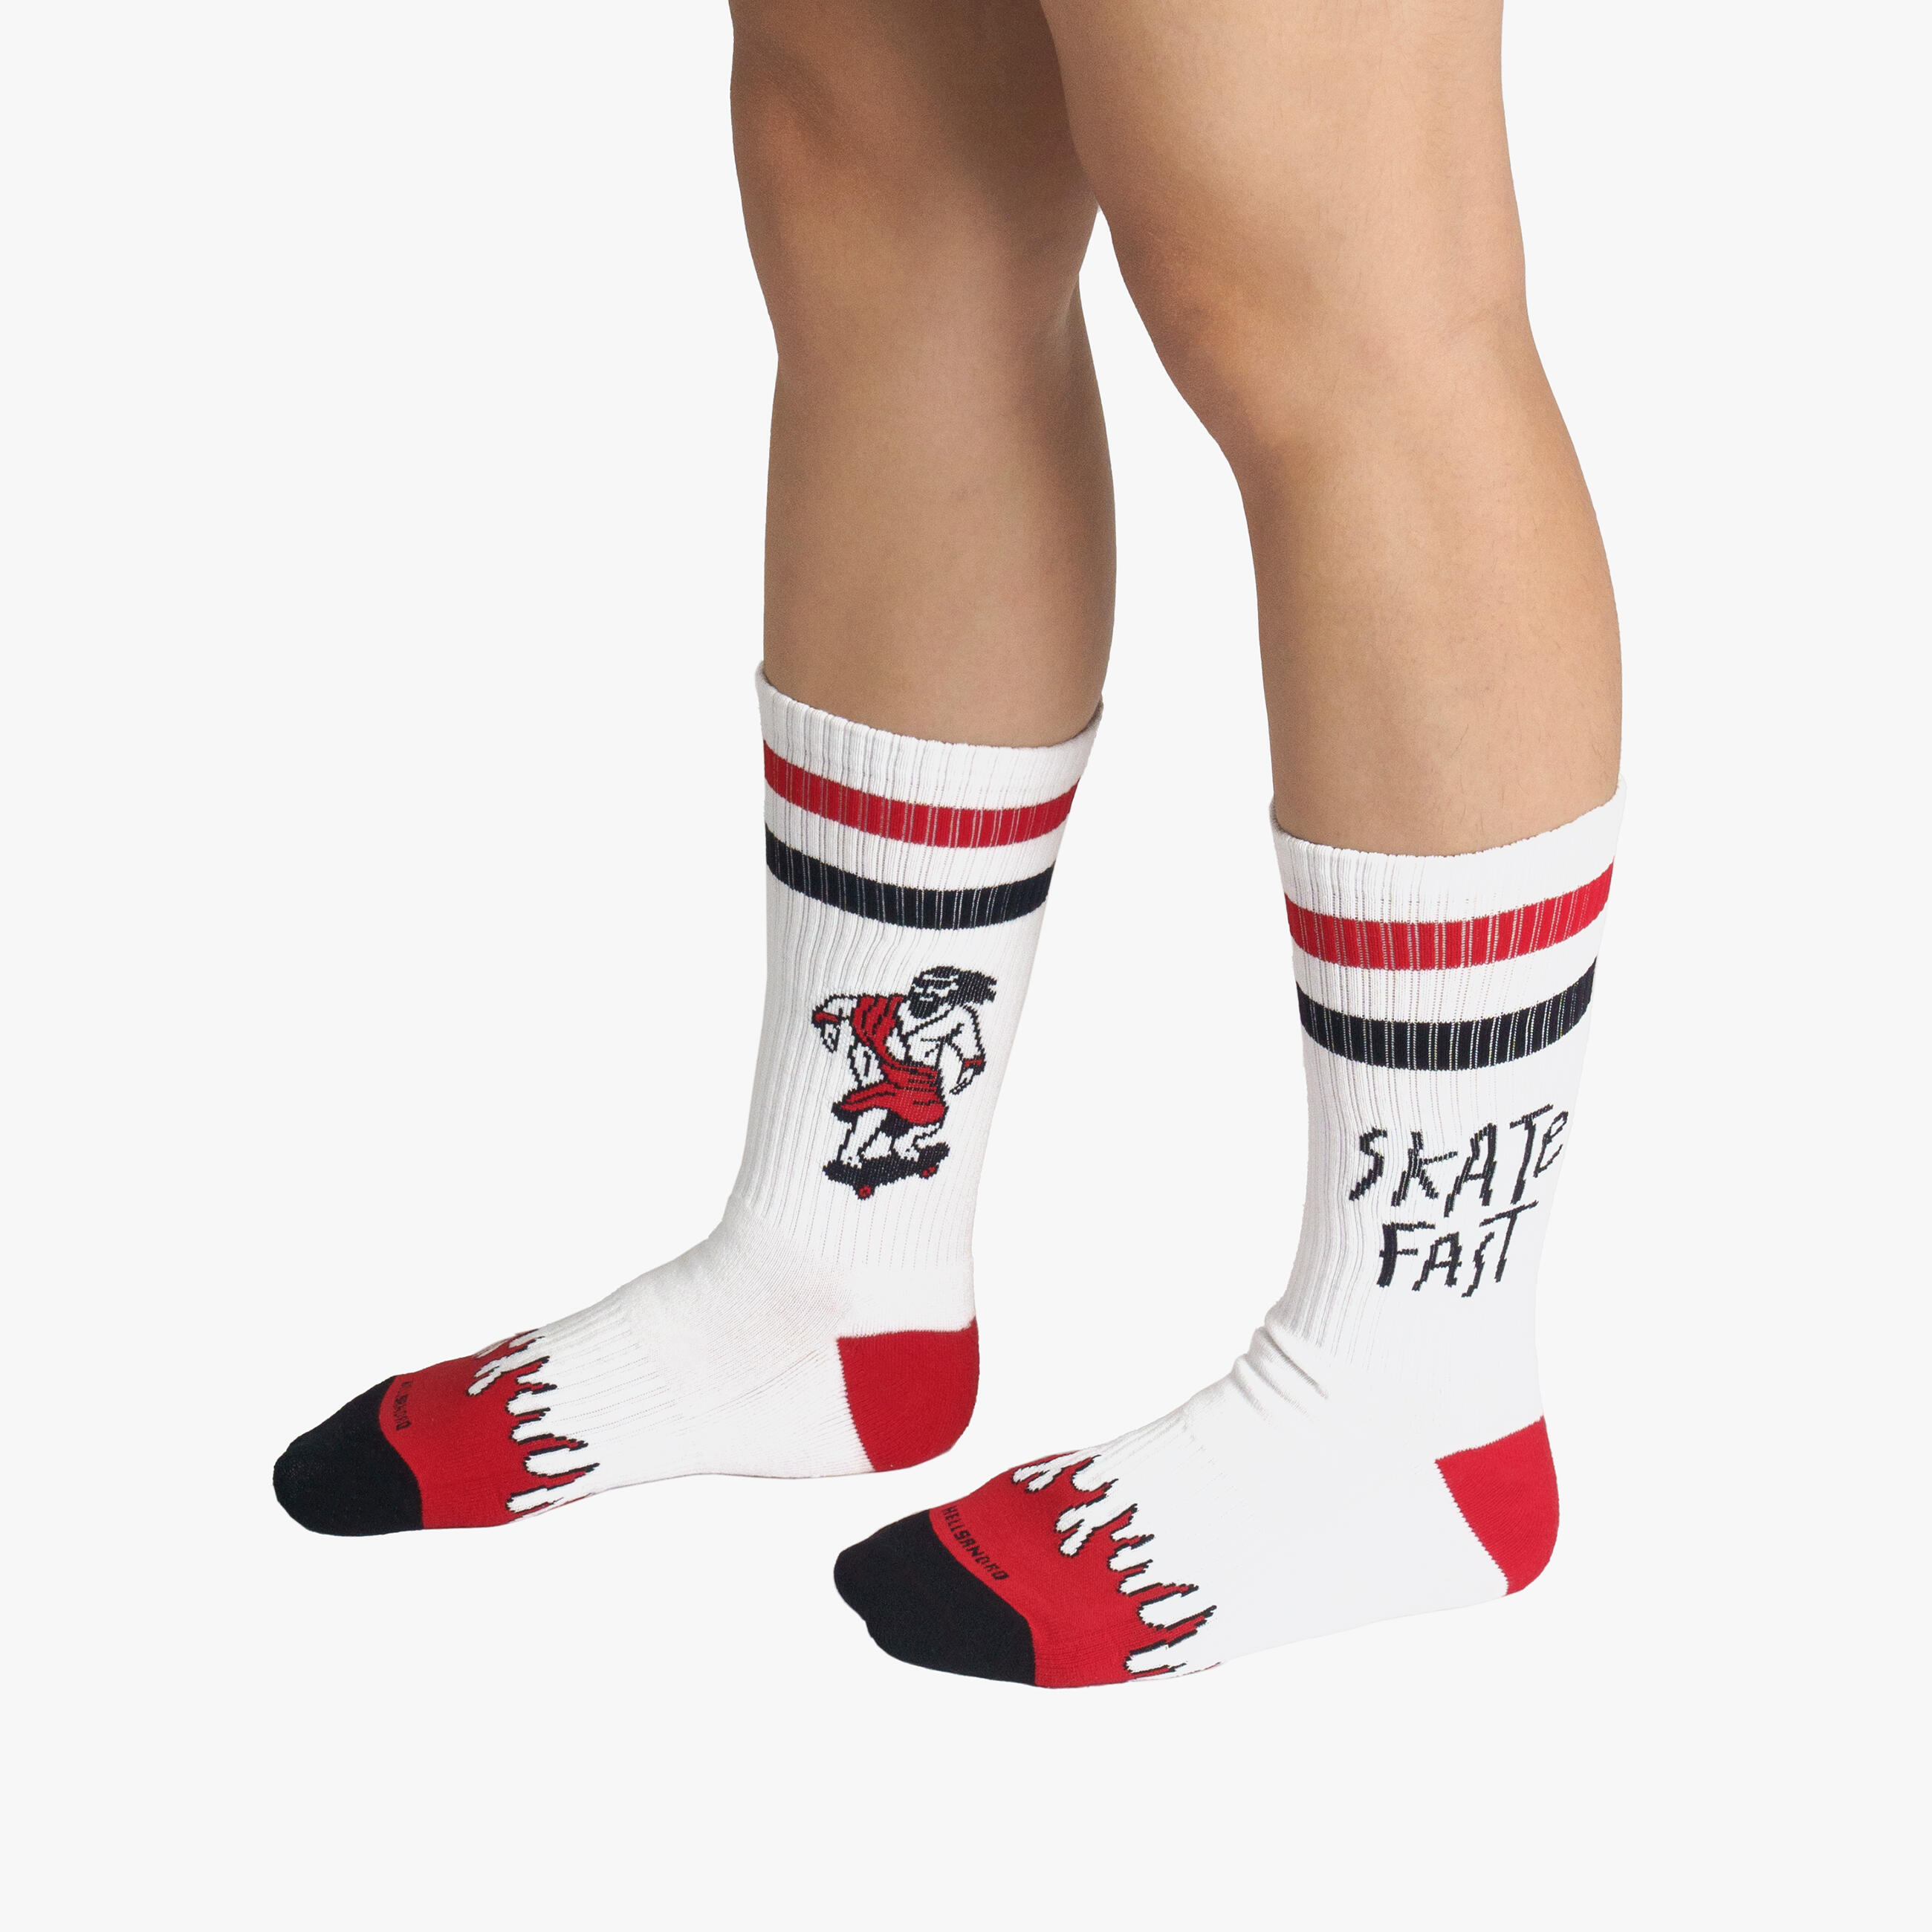 American Socks calcetines skater de media altura con calaveras